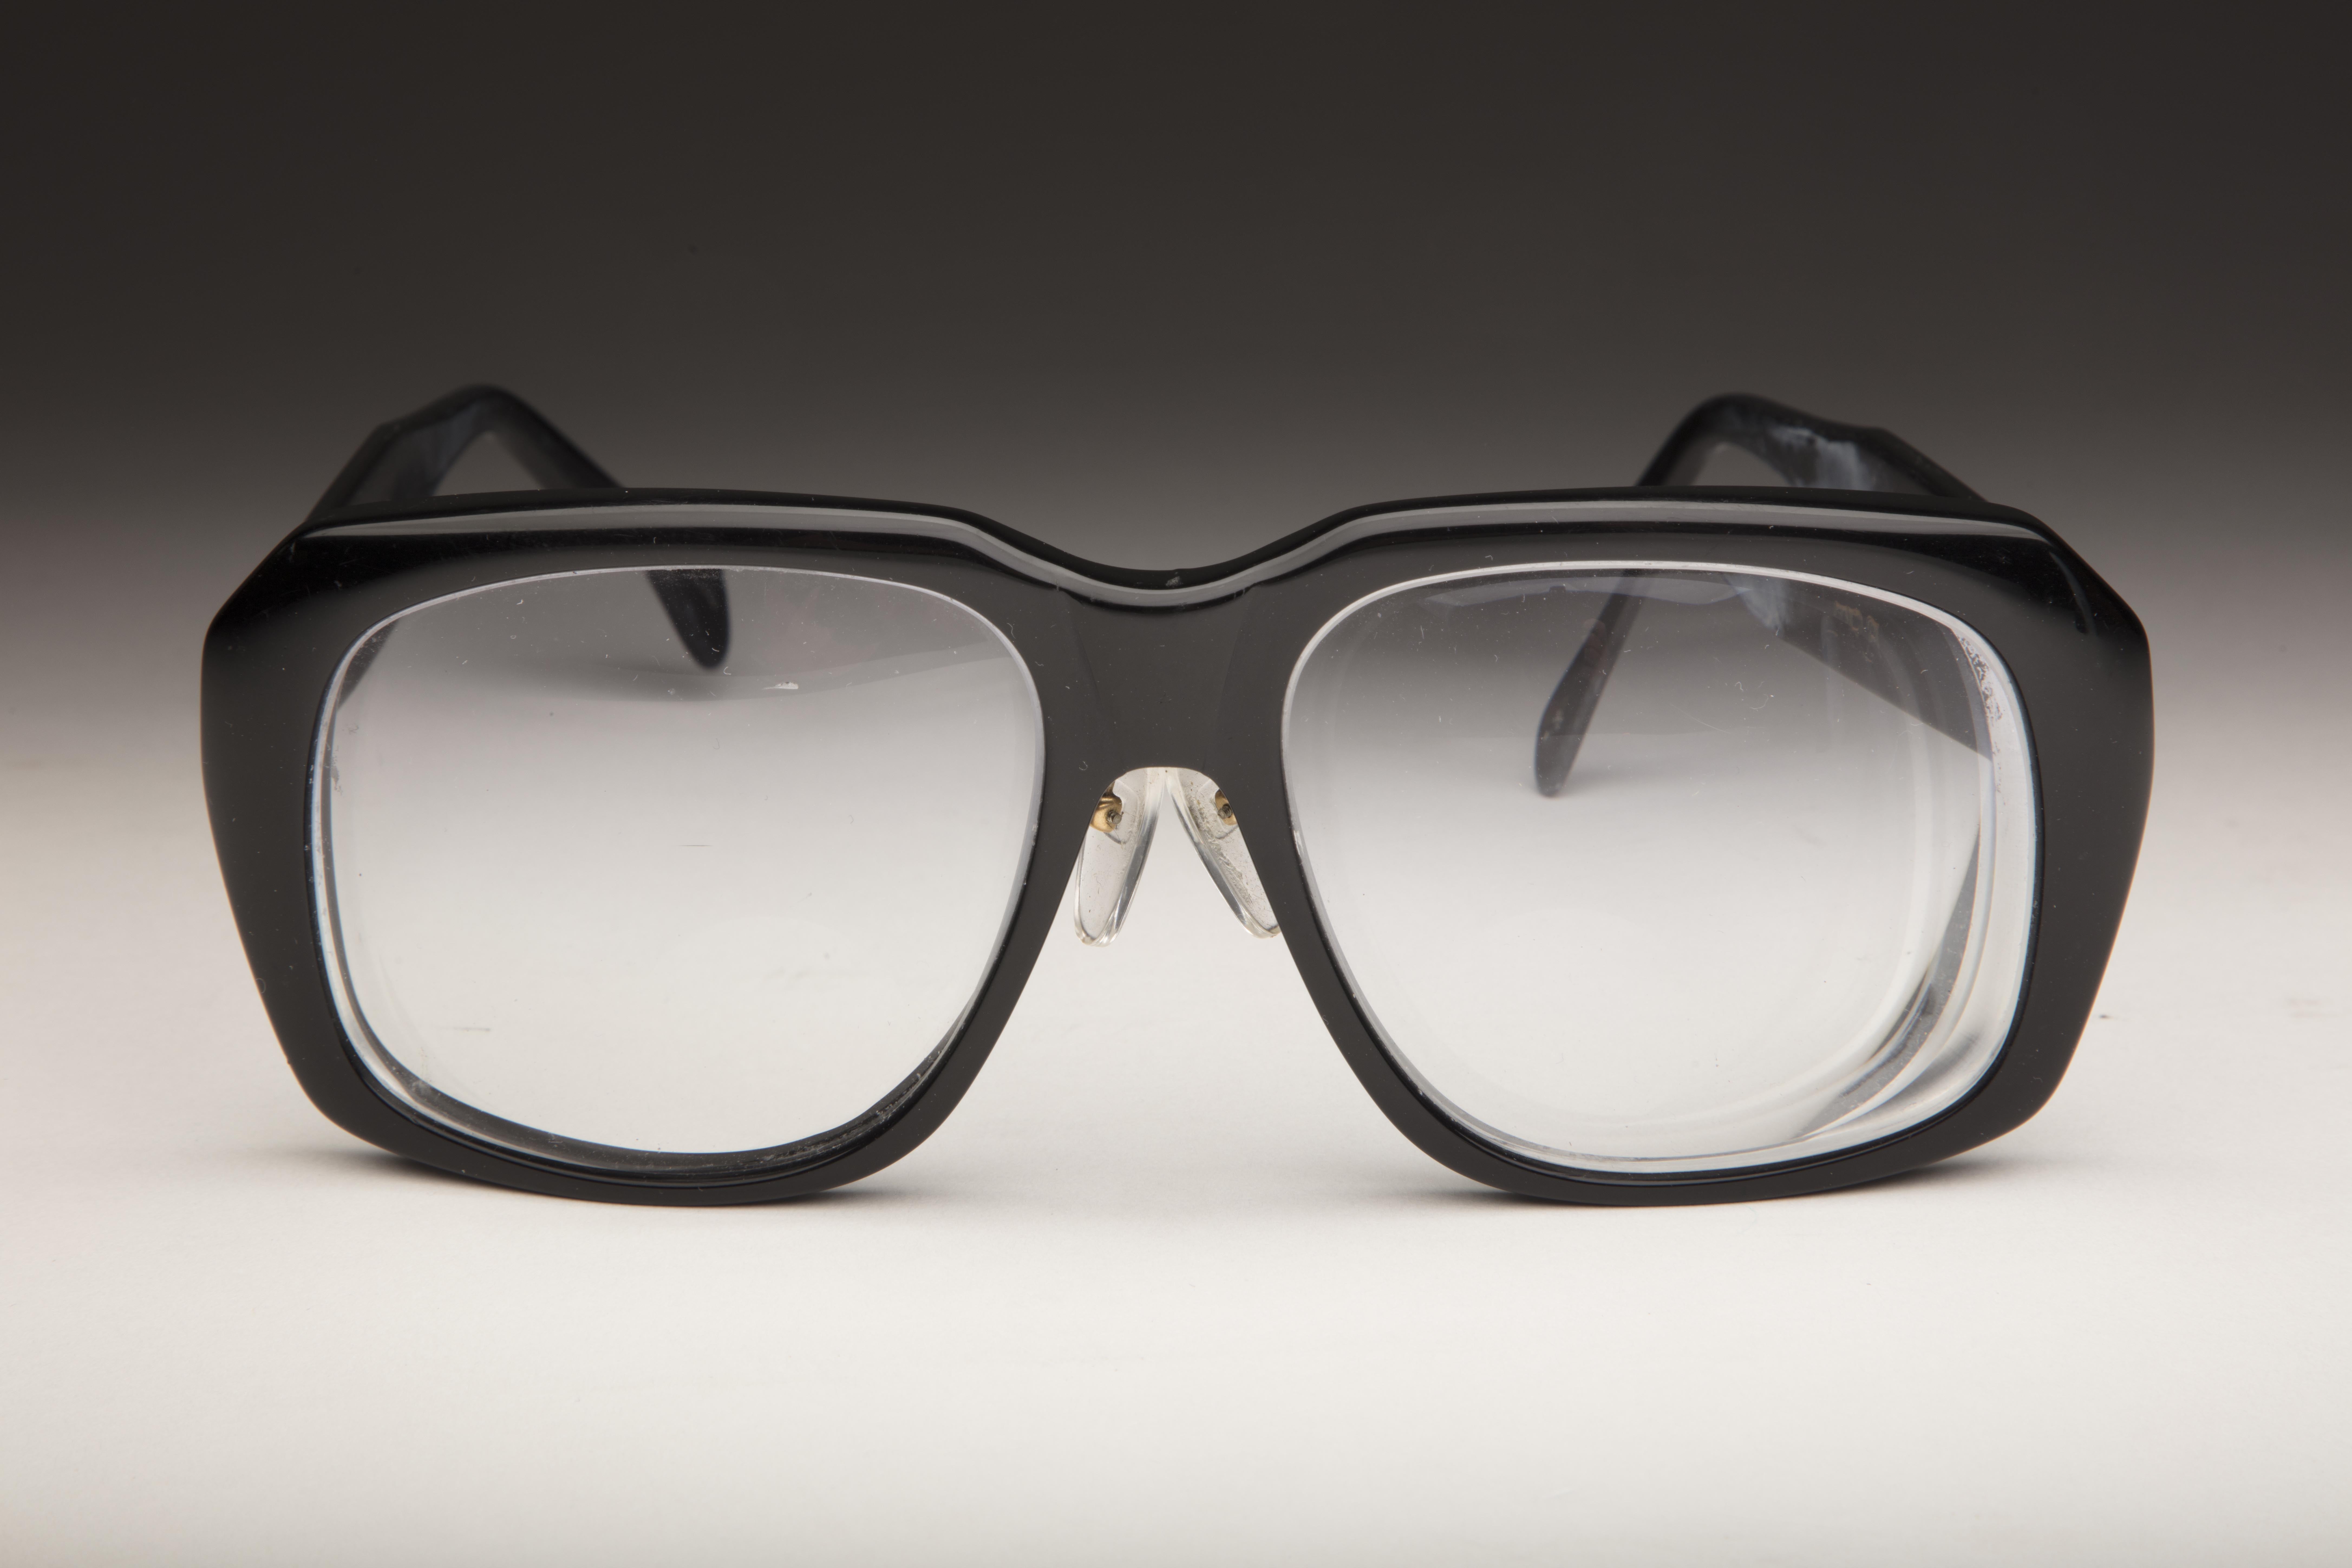 #Shortstops: Glasses Full for Harry Caray